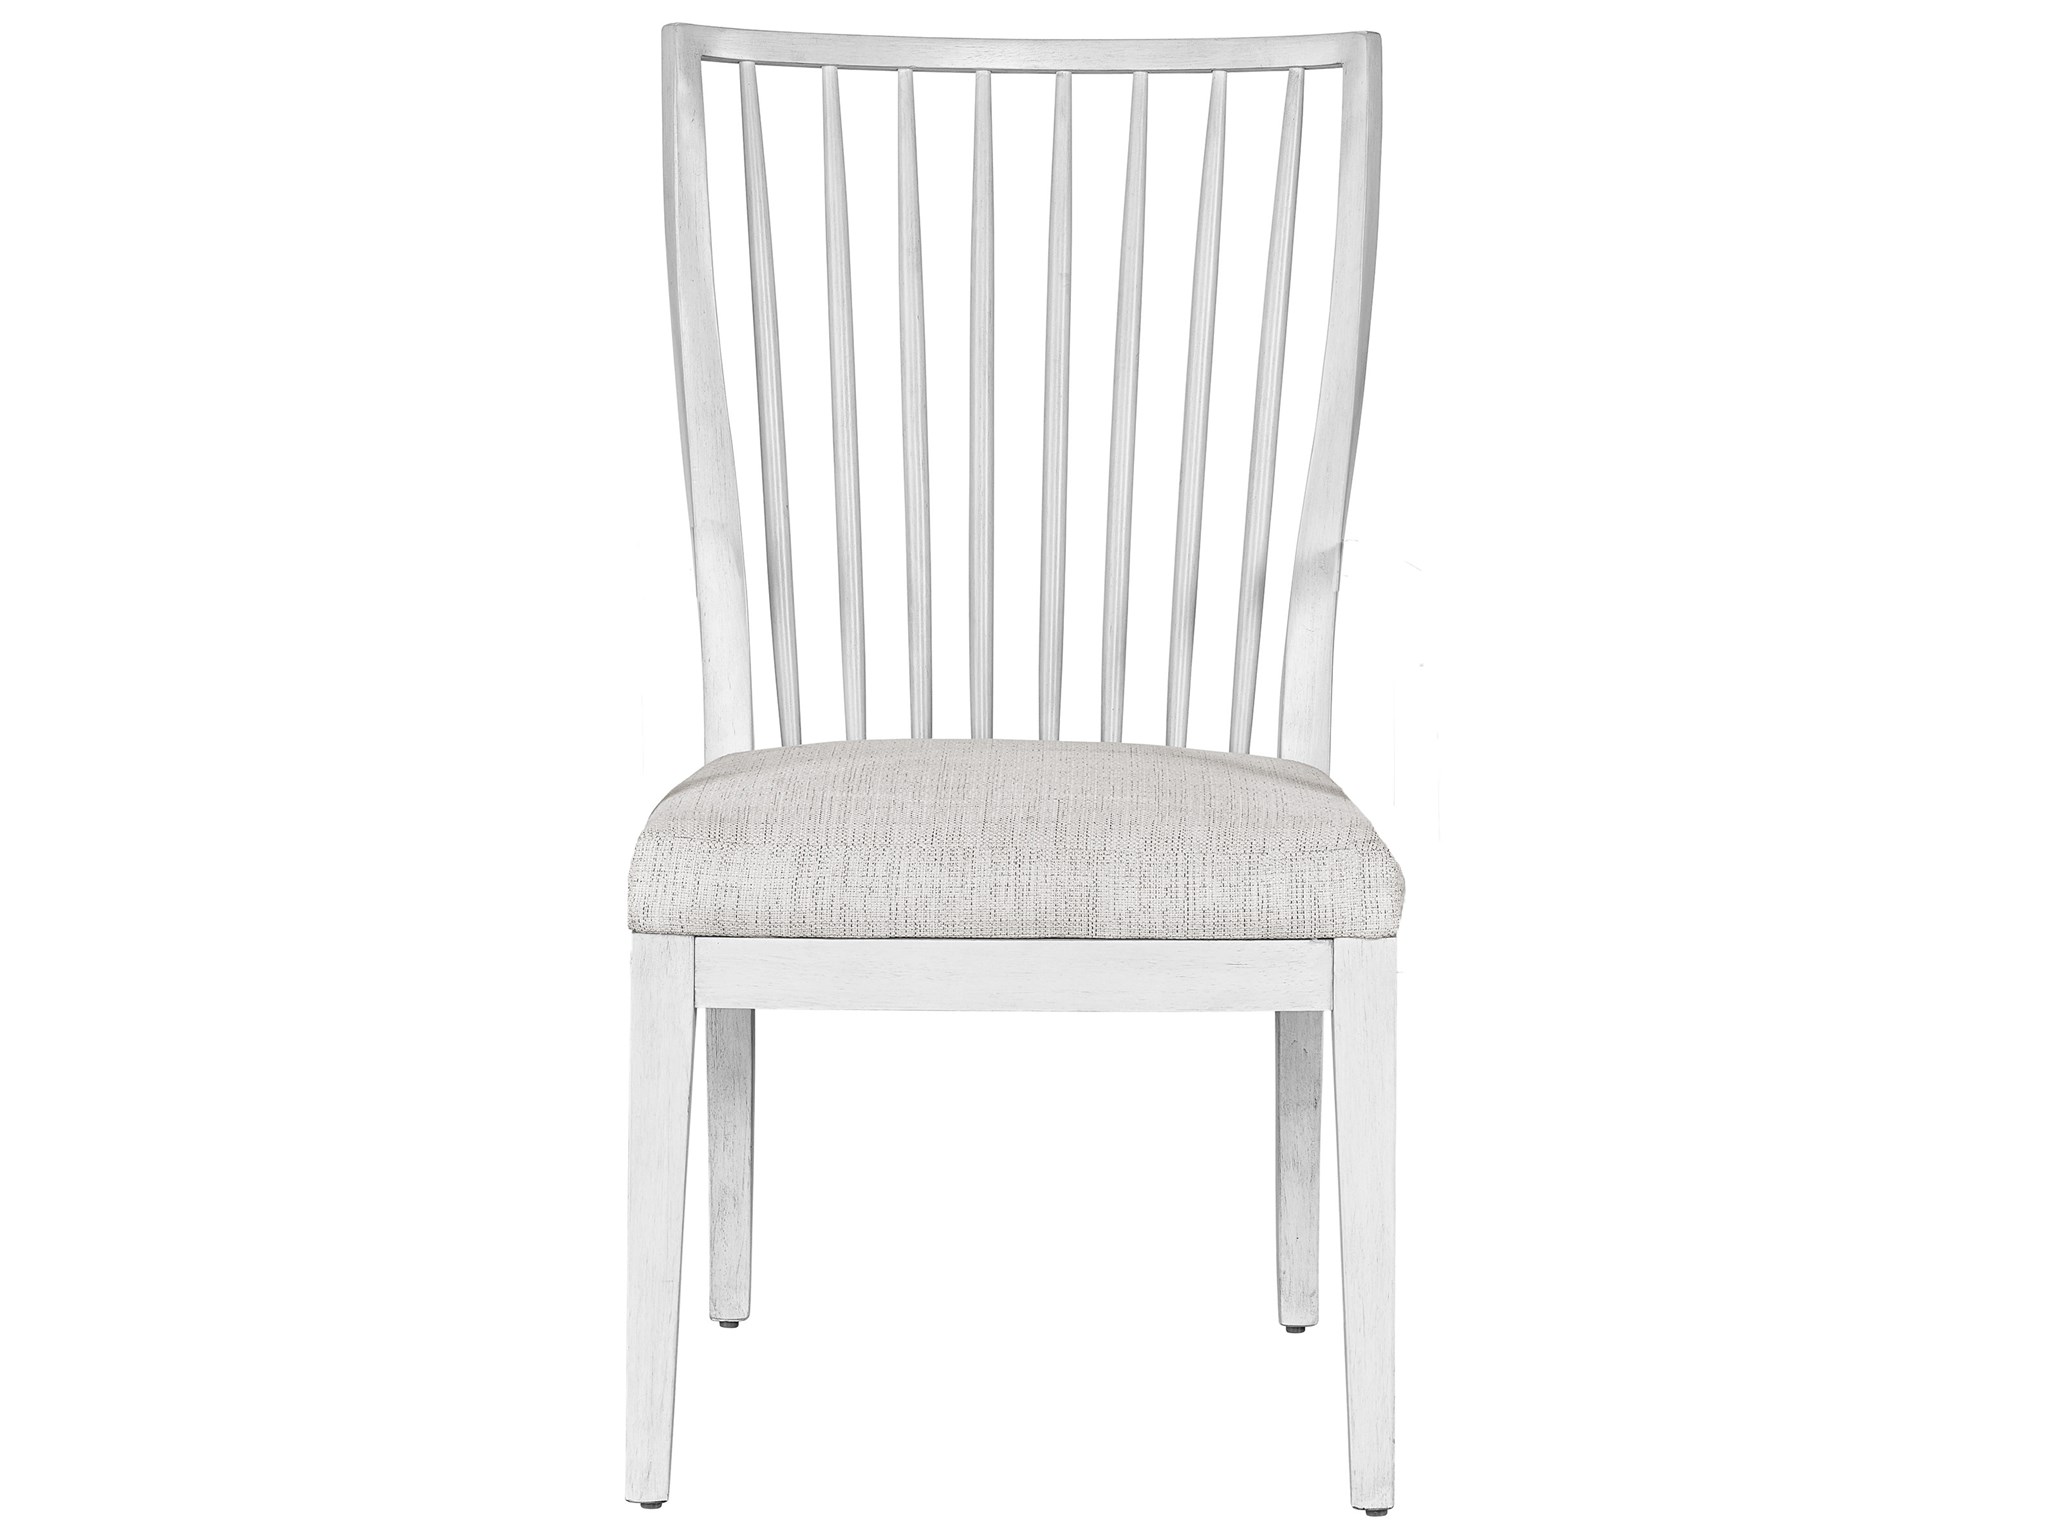 ÄLVGRÄSMAL Chair pad, gray, 13/12x13x1 - IKEA